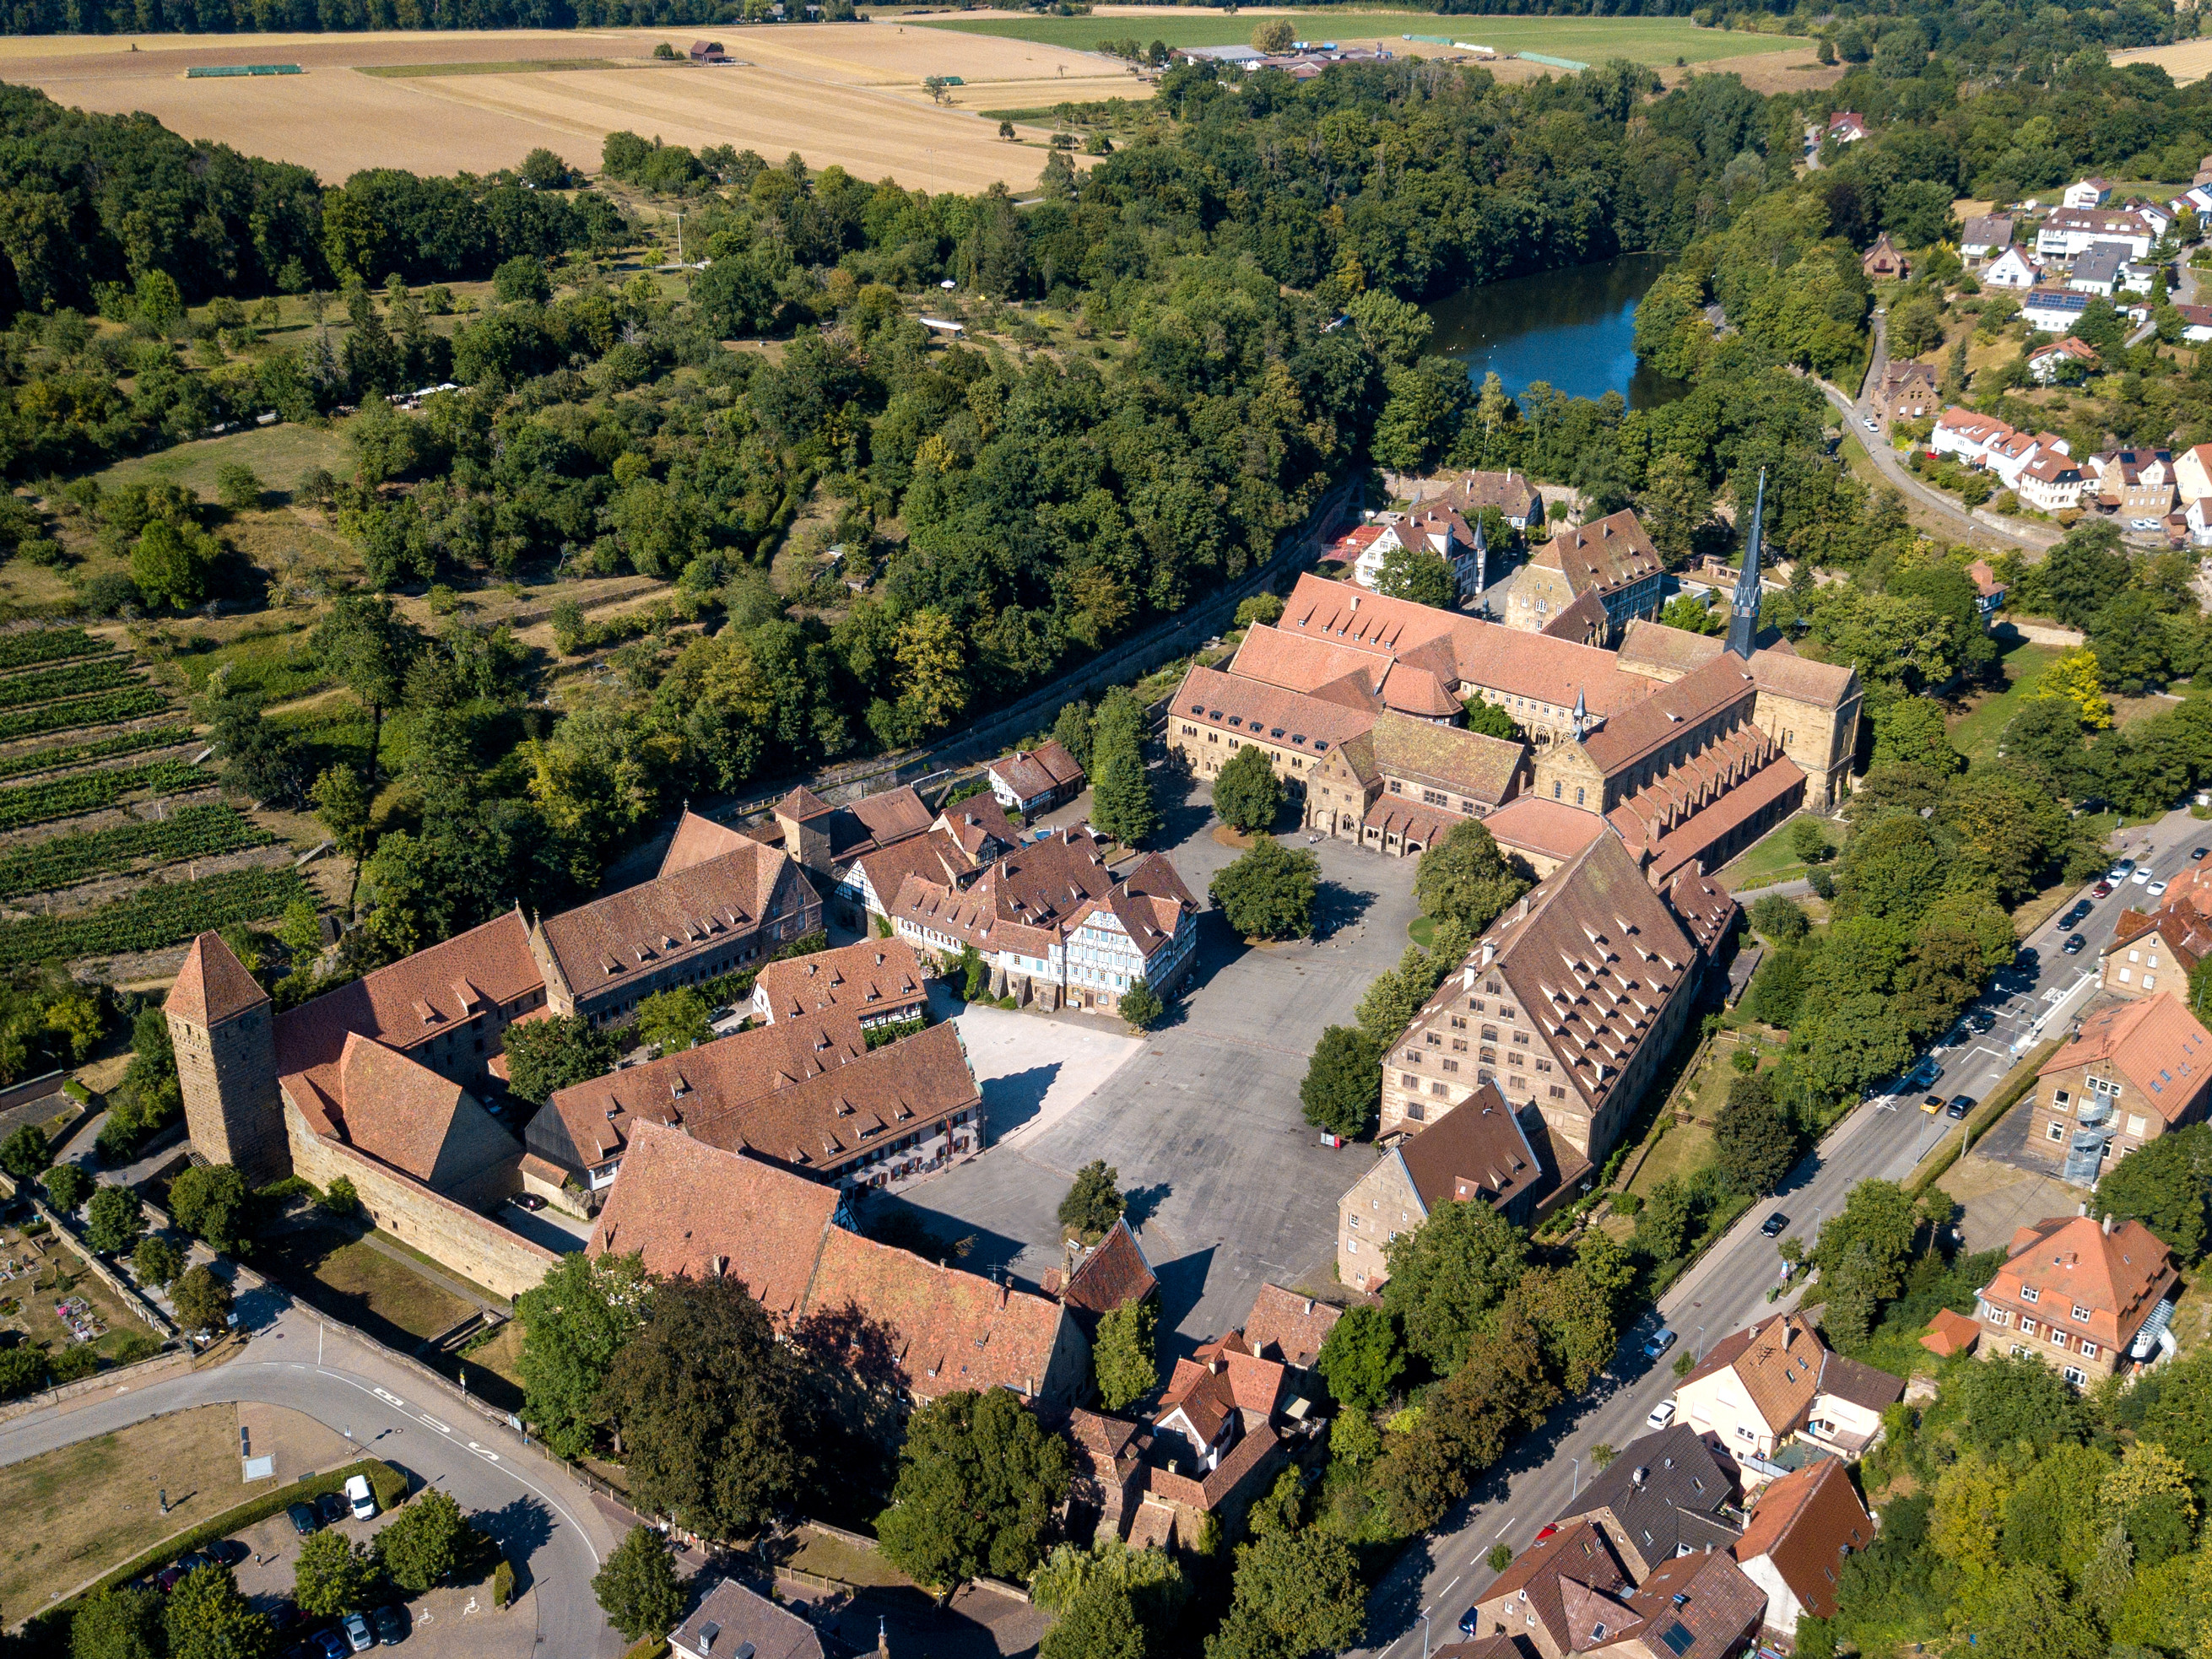 Sicht auf die Klosteranlage mit Weinberg, See und Teil der Stadt Maulbronn